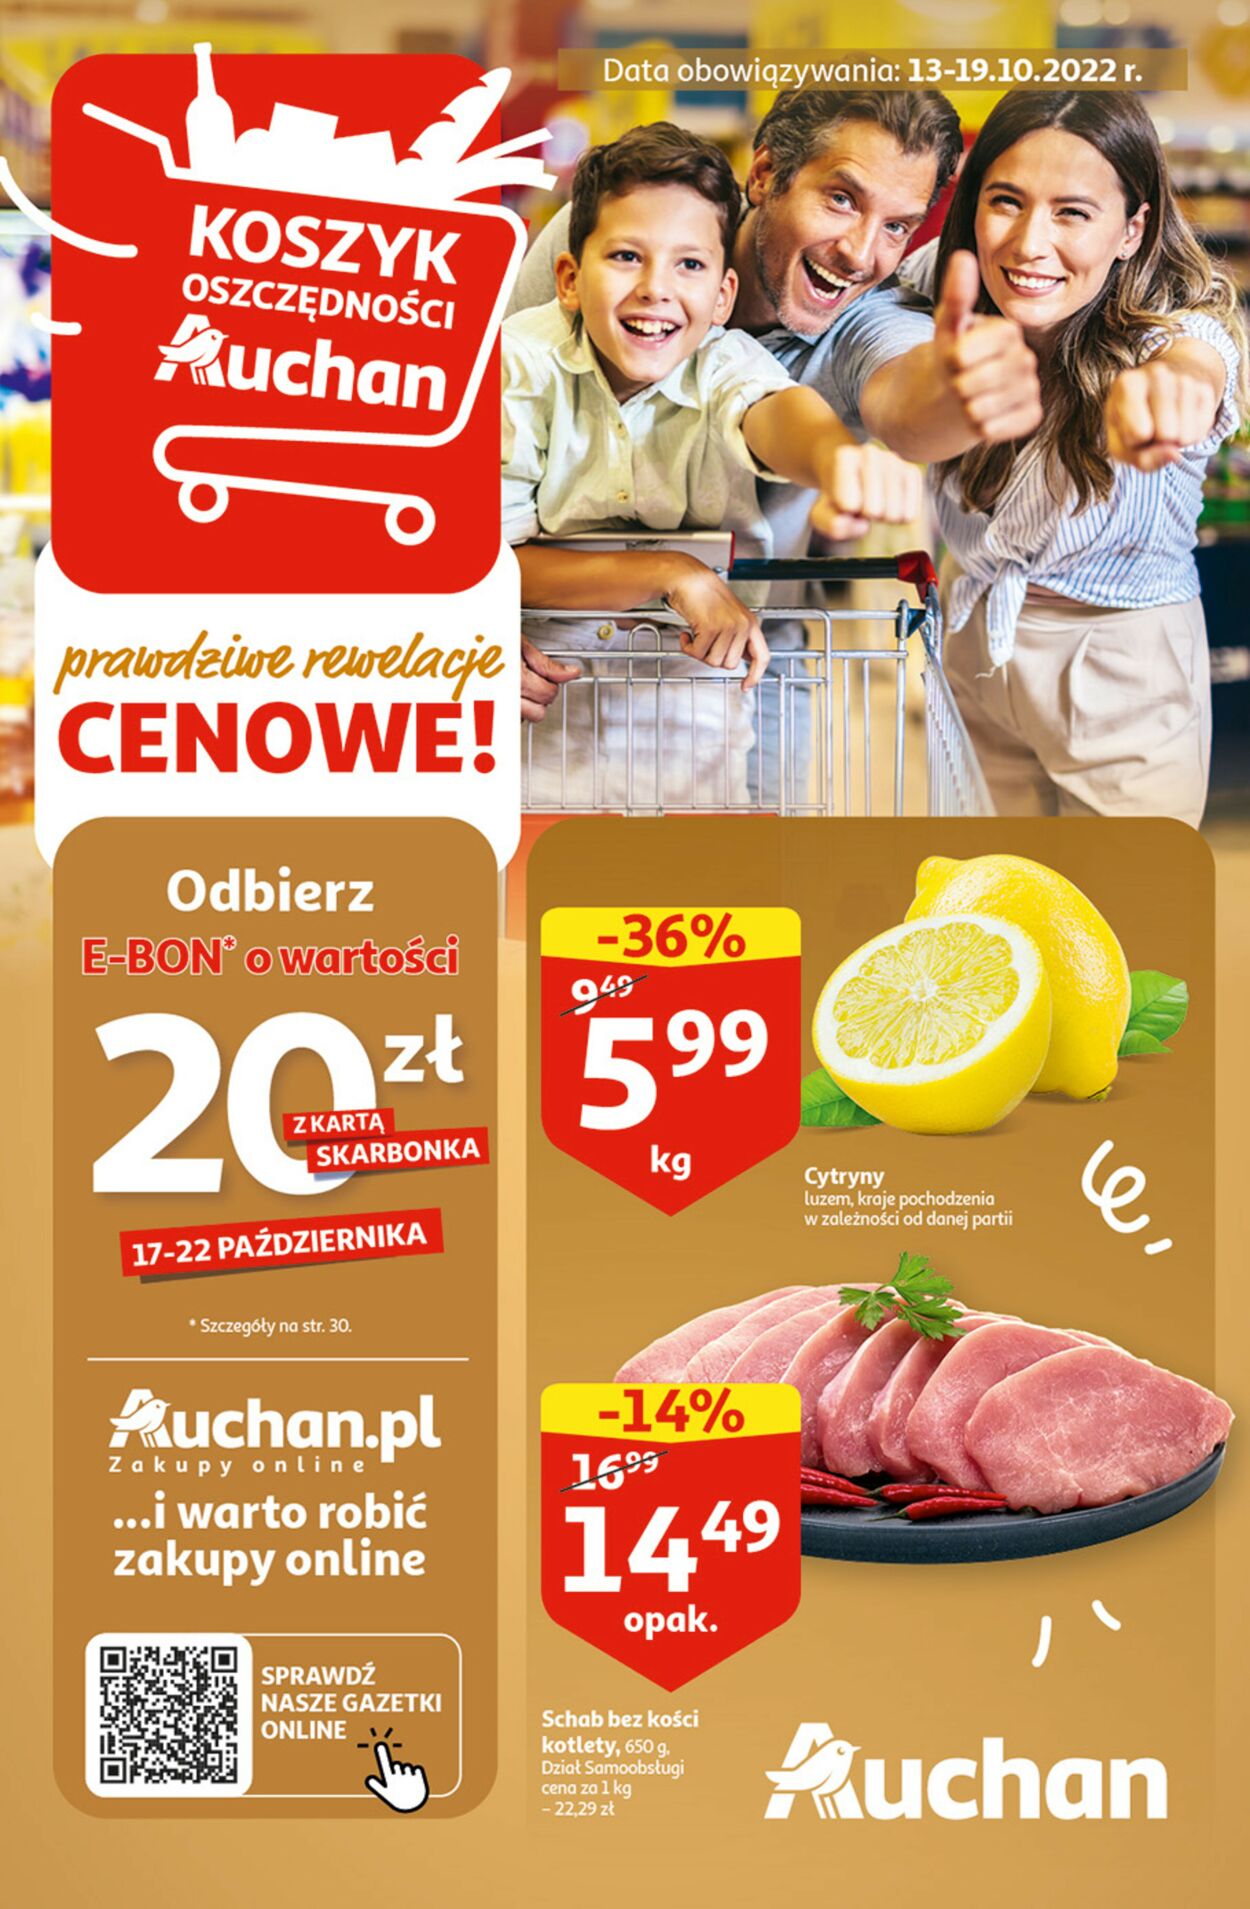 Gazetka Auchan od 13.10.2022 do 19.10.2022